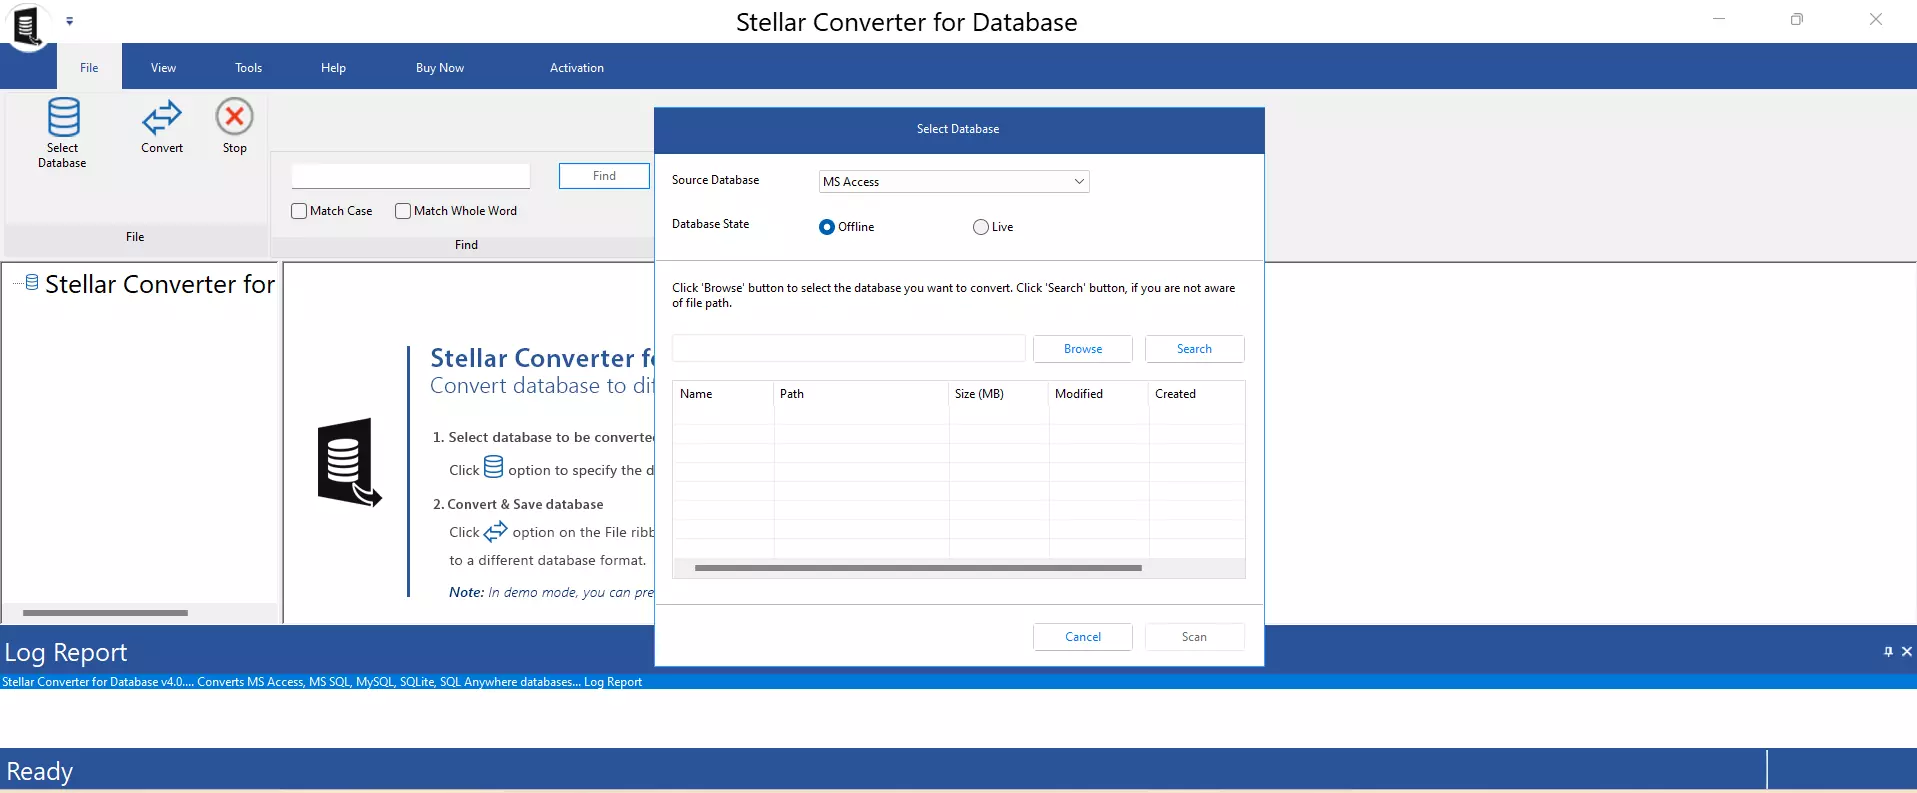 Stellar Converter for Database Tool